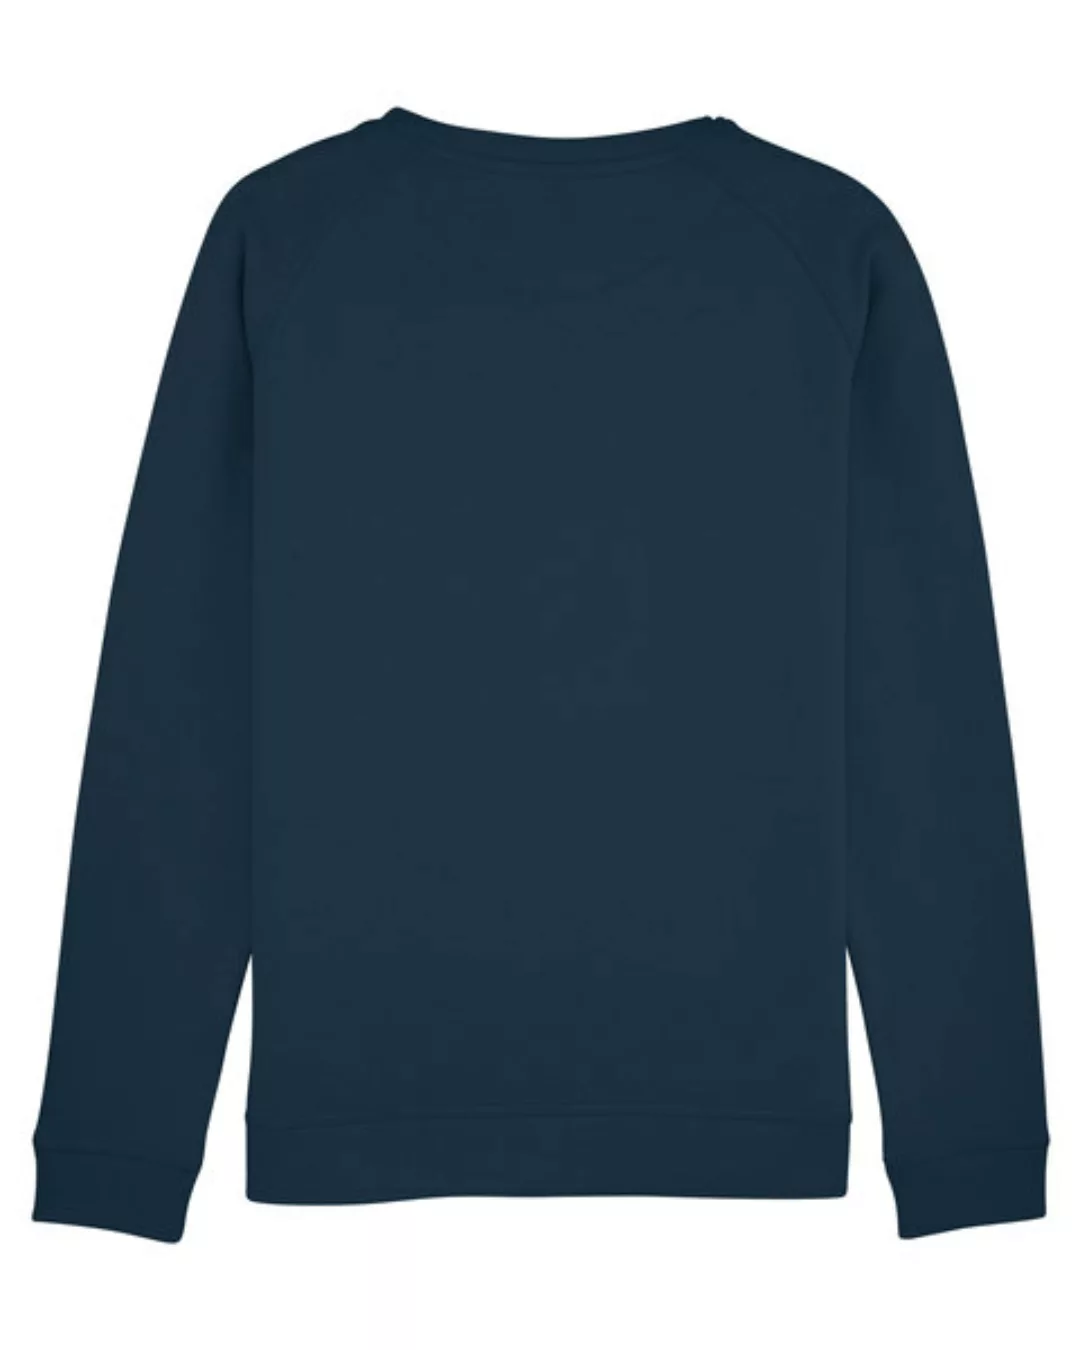 Bio Damen Sweatshirt - Everyday Equality günstig online kaufen